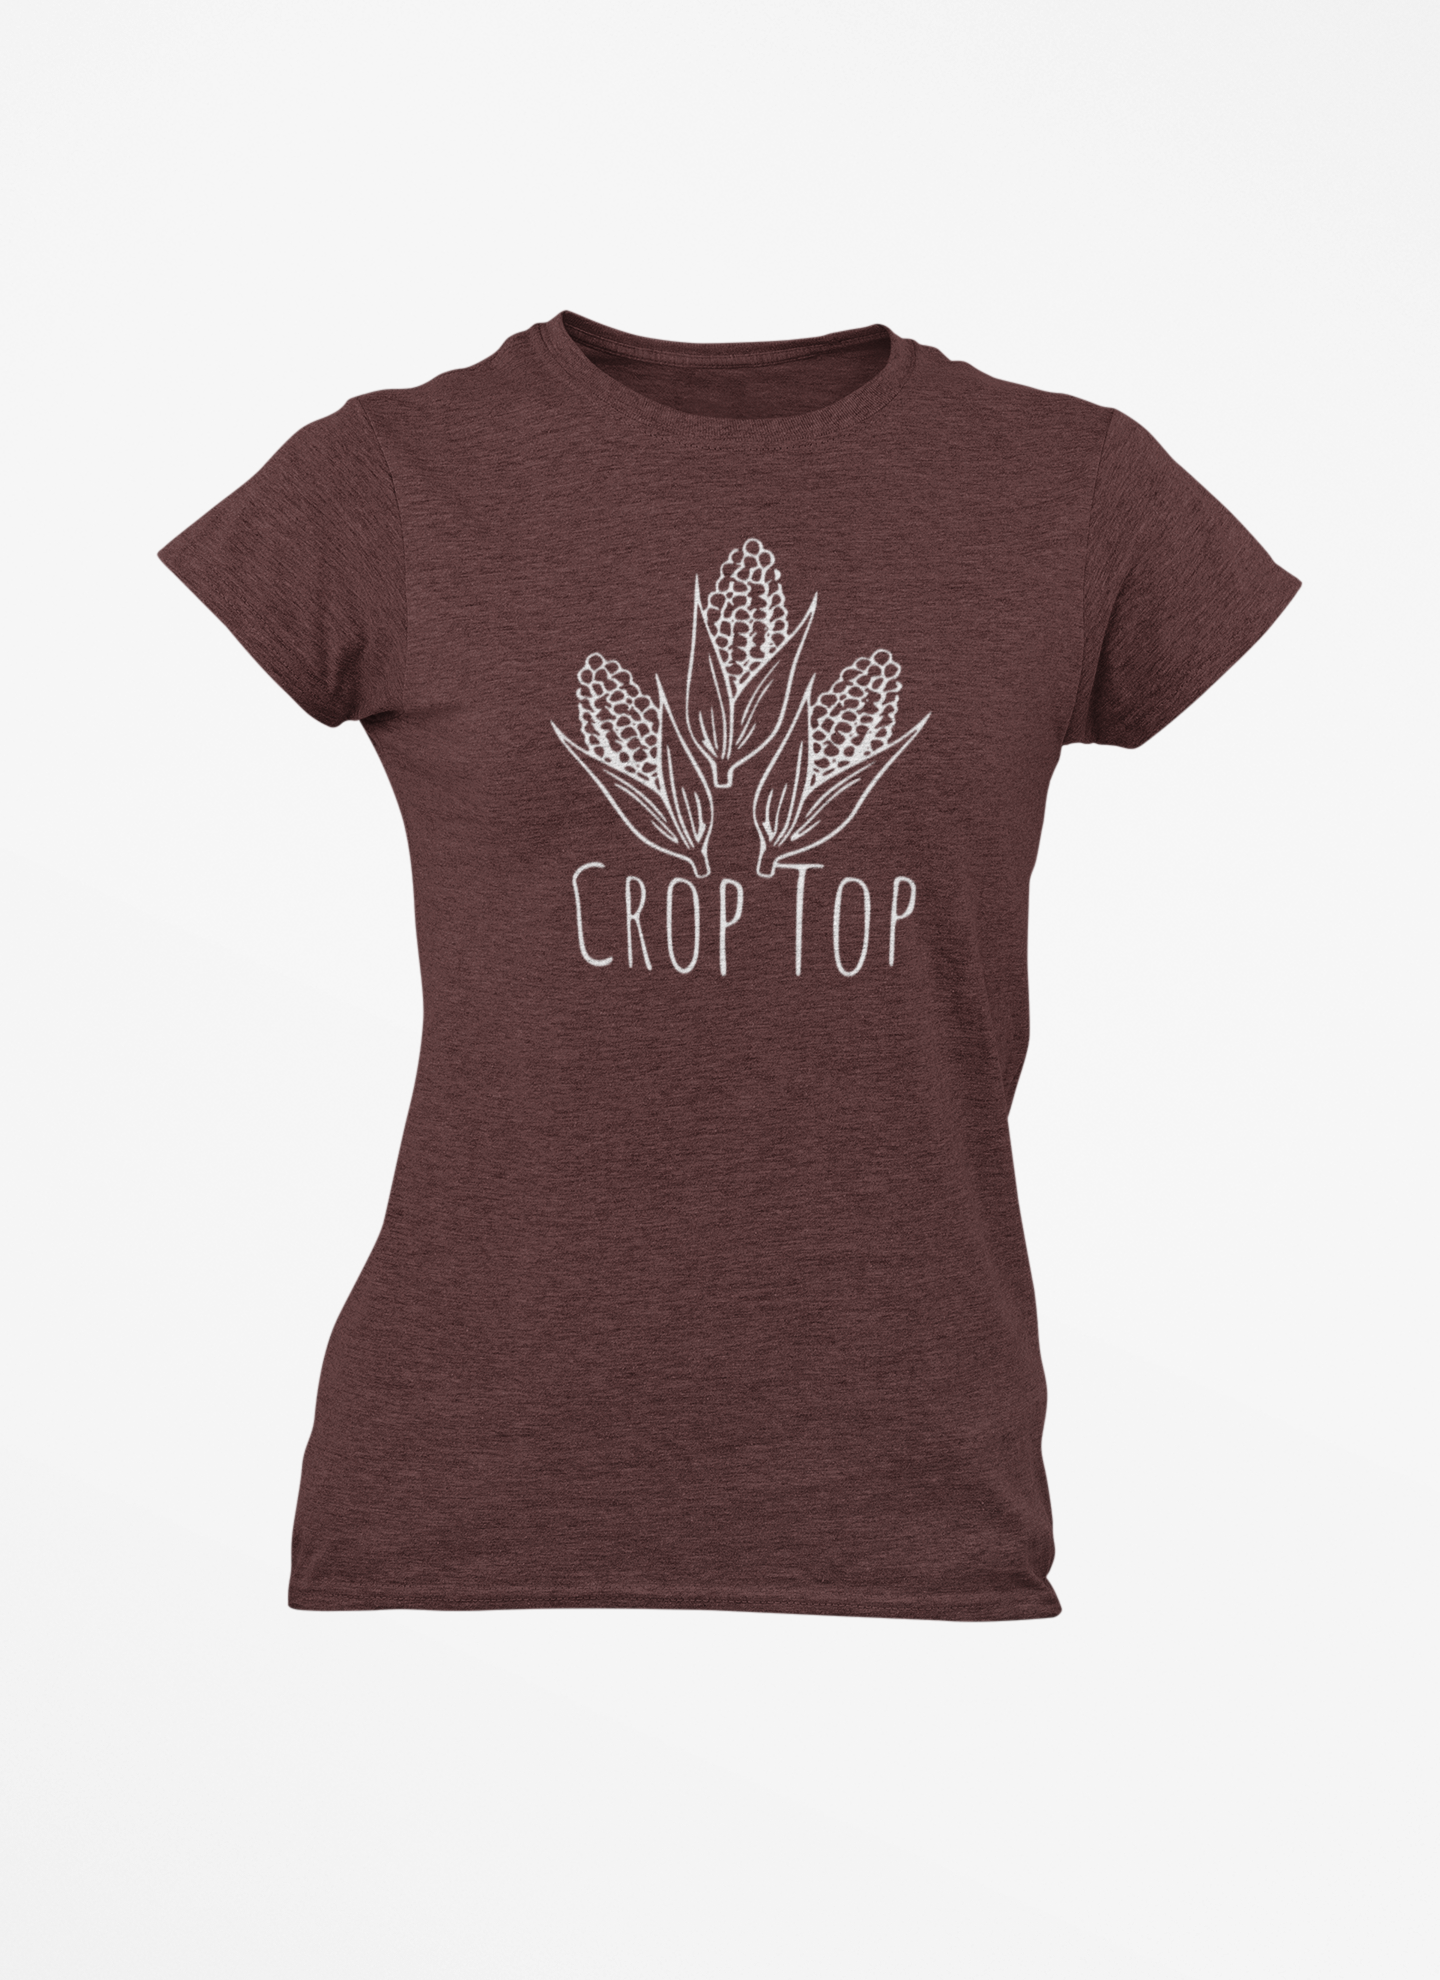 Women's Crop Top T